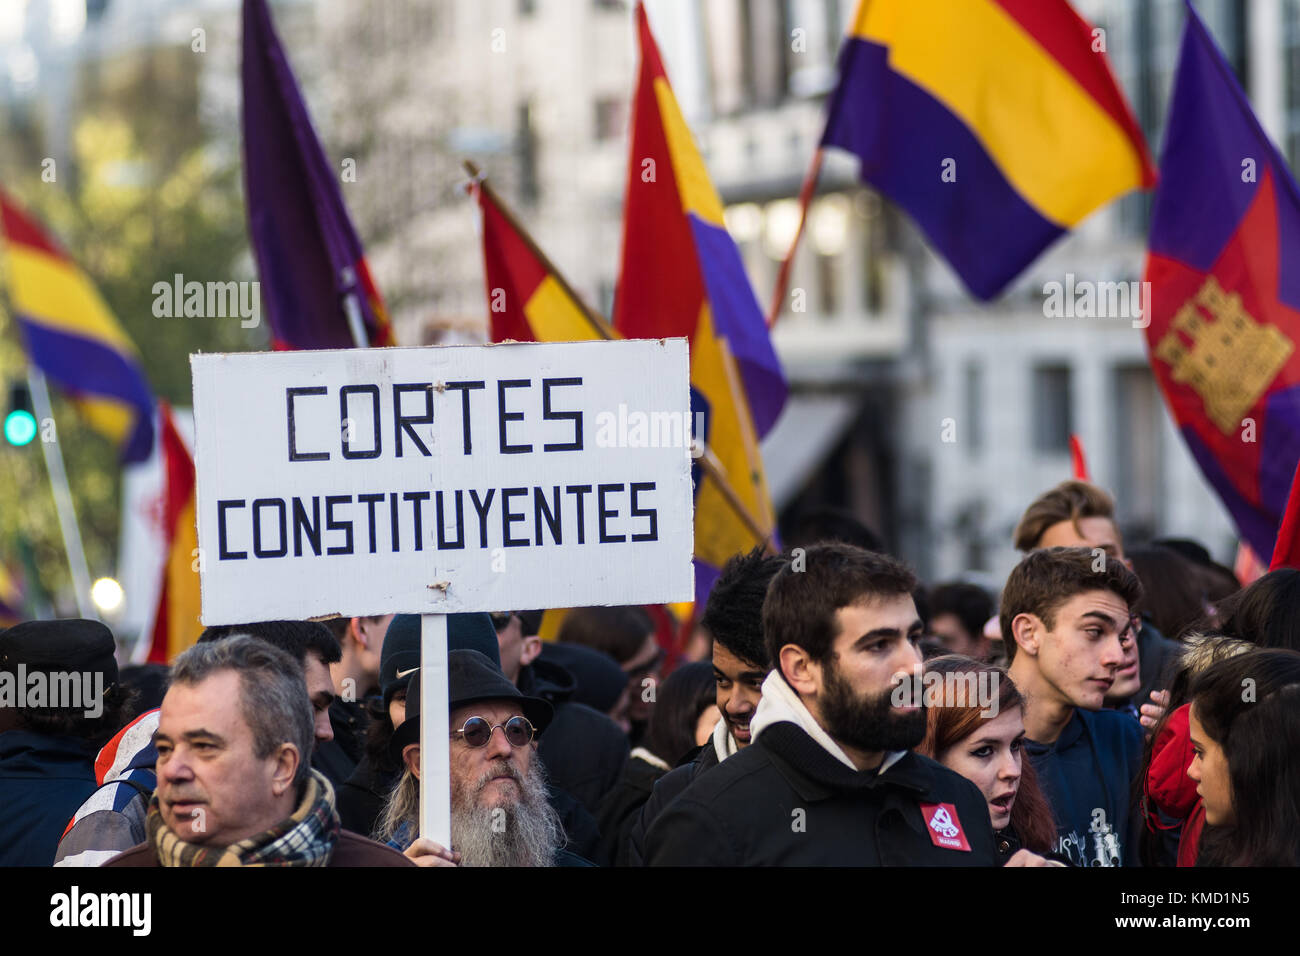 Madrid, Espagne. 6e dec 2017. personnes exigeant une 3ème République au cours d'une manifestation contre la monarchie le jour du 39e anniversaire de la constitution espagnole à Madrid, Espagne. crédit : marcos del mazo/Alamy live news Banque D'Images